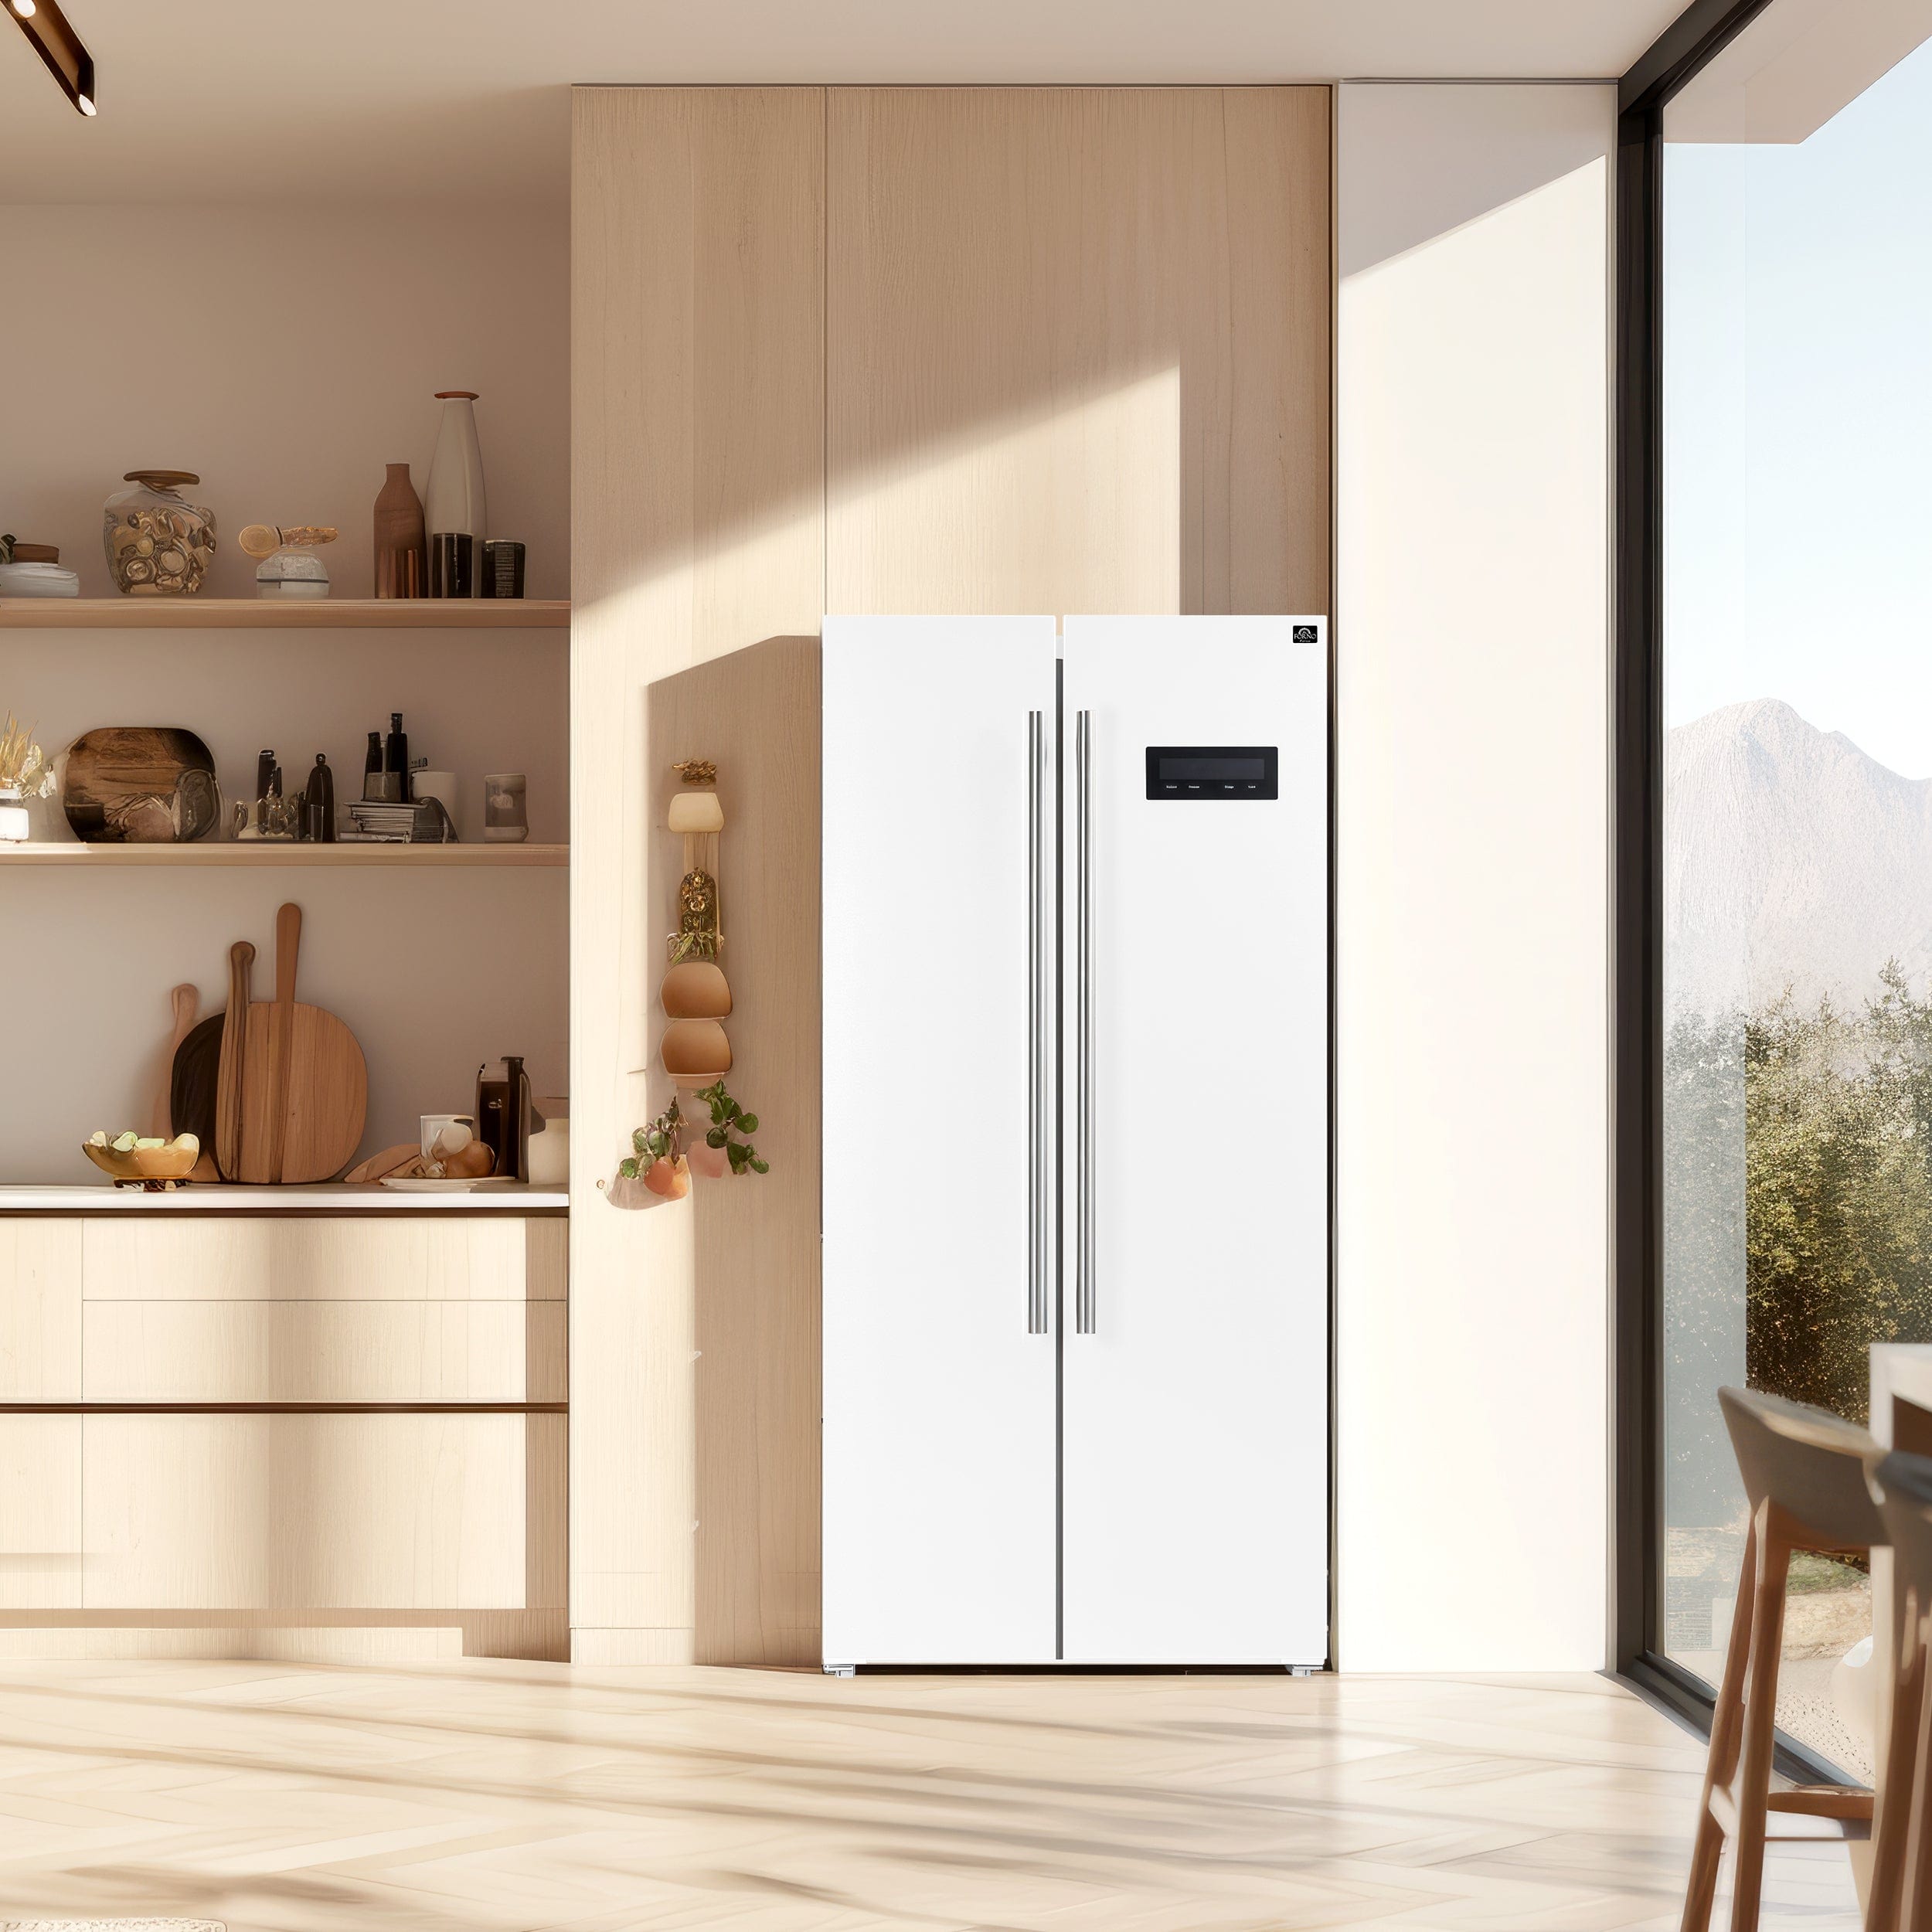 Forno Espresso 33" 15.6 cu. ft. Refrigerator in White with Antique Brass Handles, FFRBI1805-33WHT Refrigerator FFRBI1805-33WHT Luxury Appliances Direct